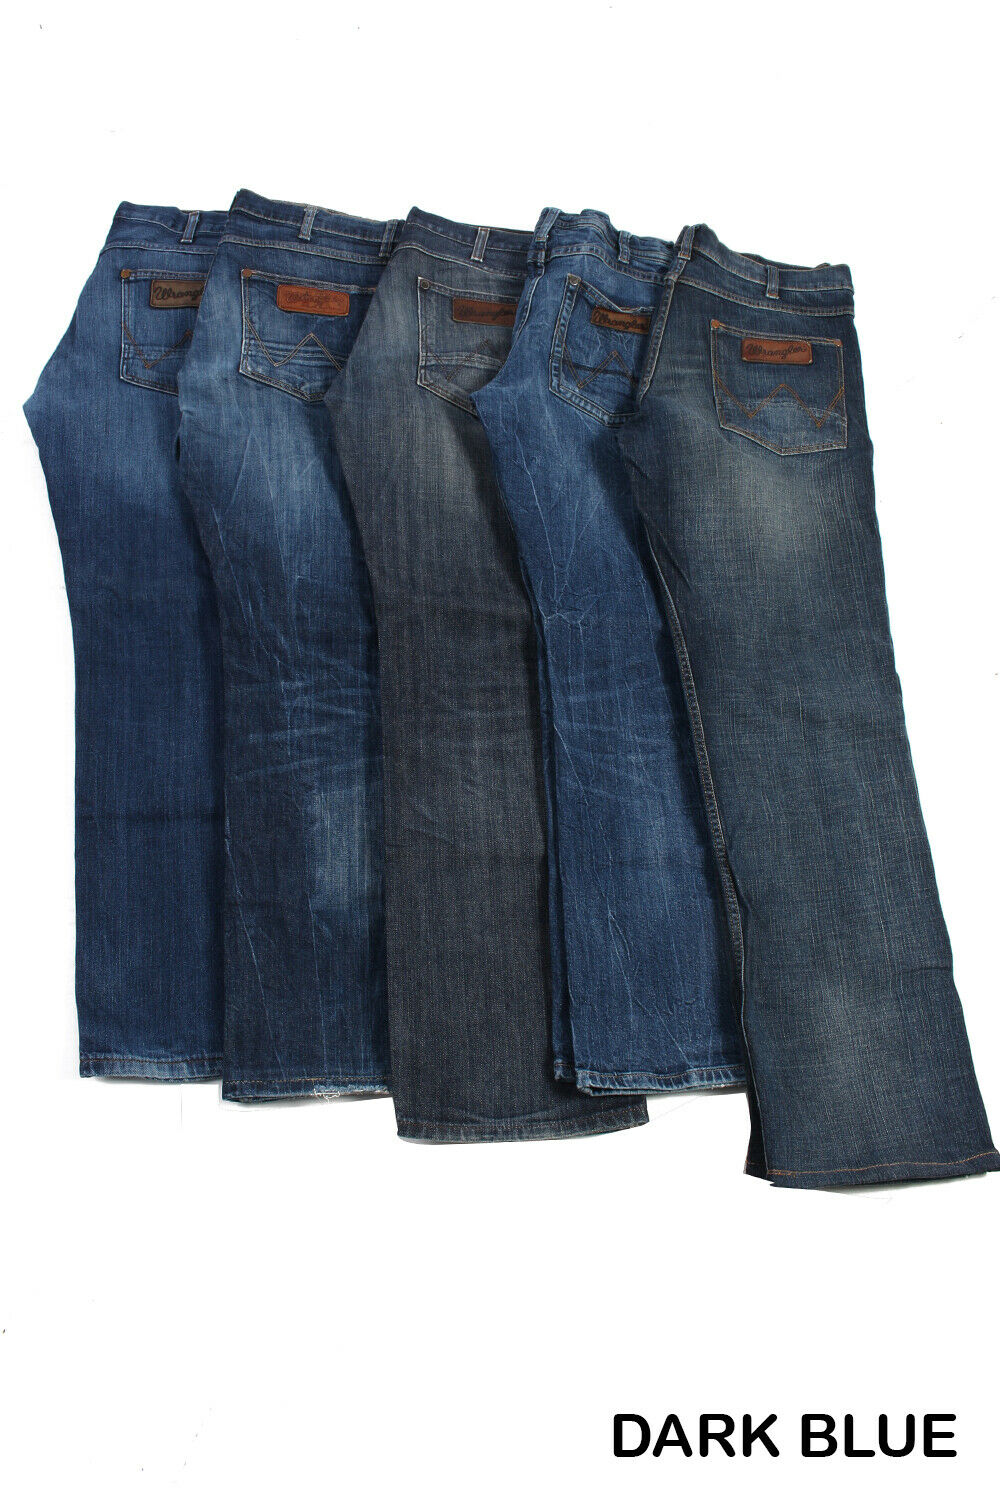 Wrangler Ace Men Jeans Straight Leg Regular Fit Button Fly 90s – Pepper ...